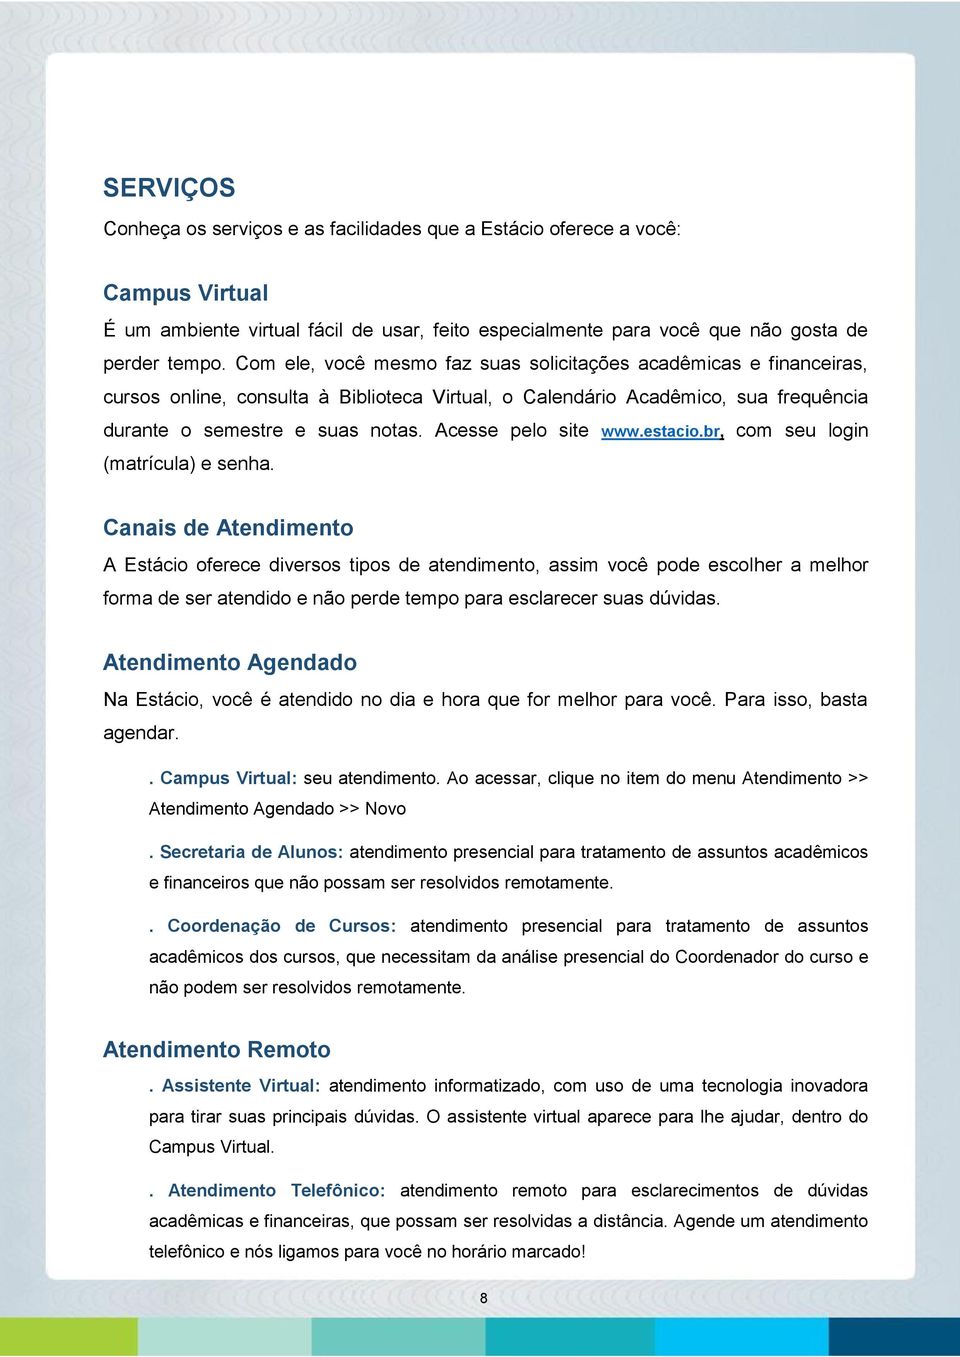 Acesse pelo site www.estacio.br, com seu login (matrícula) e senha.